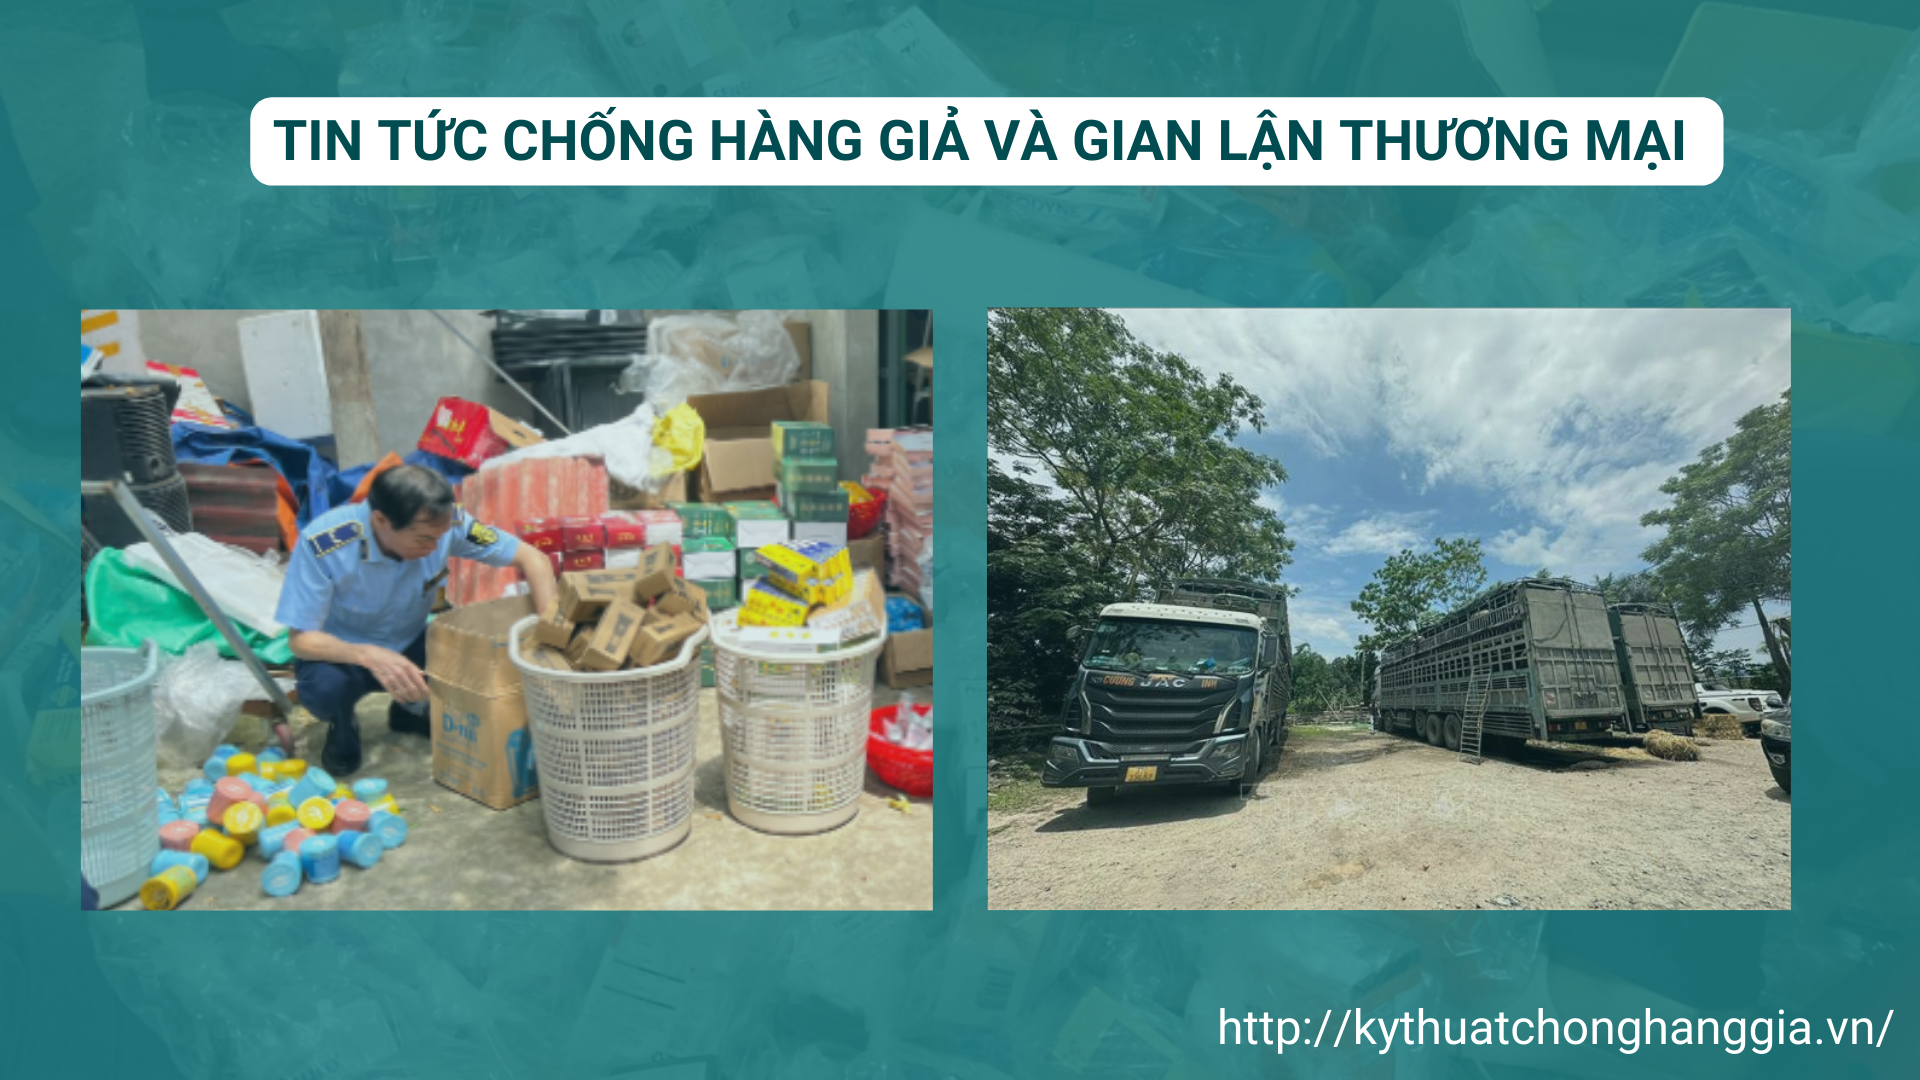 Cục Quản lý thị trường tỉnh Lạng Sơn: Tăng cường phòng, chống buôn lậu, gian lận thương mại, hàng giả | Bản tin CHG